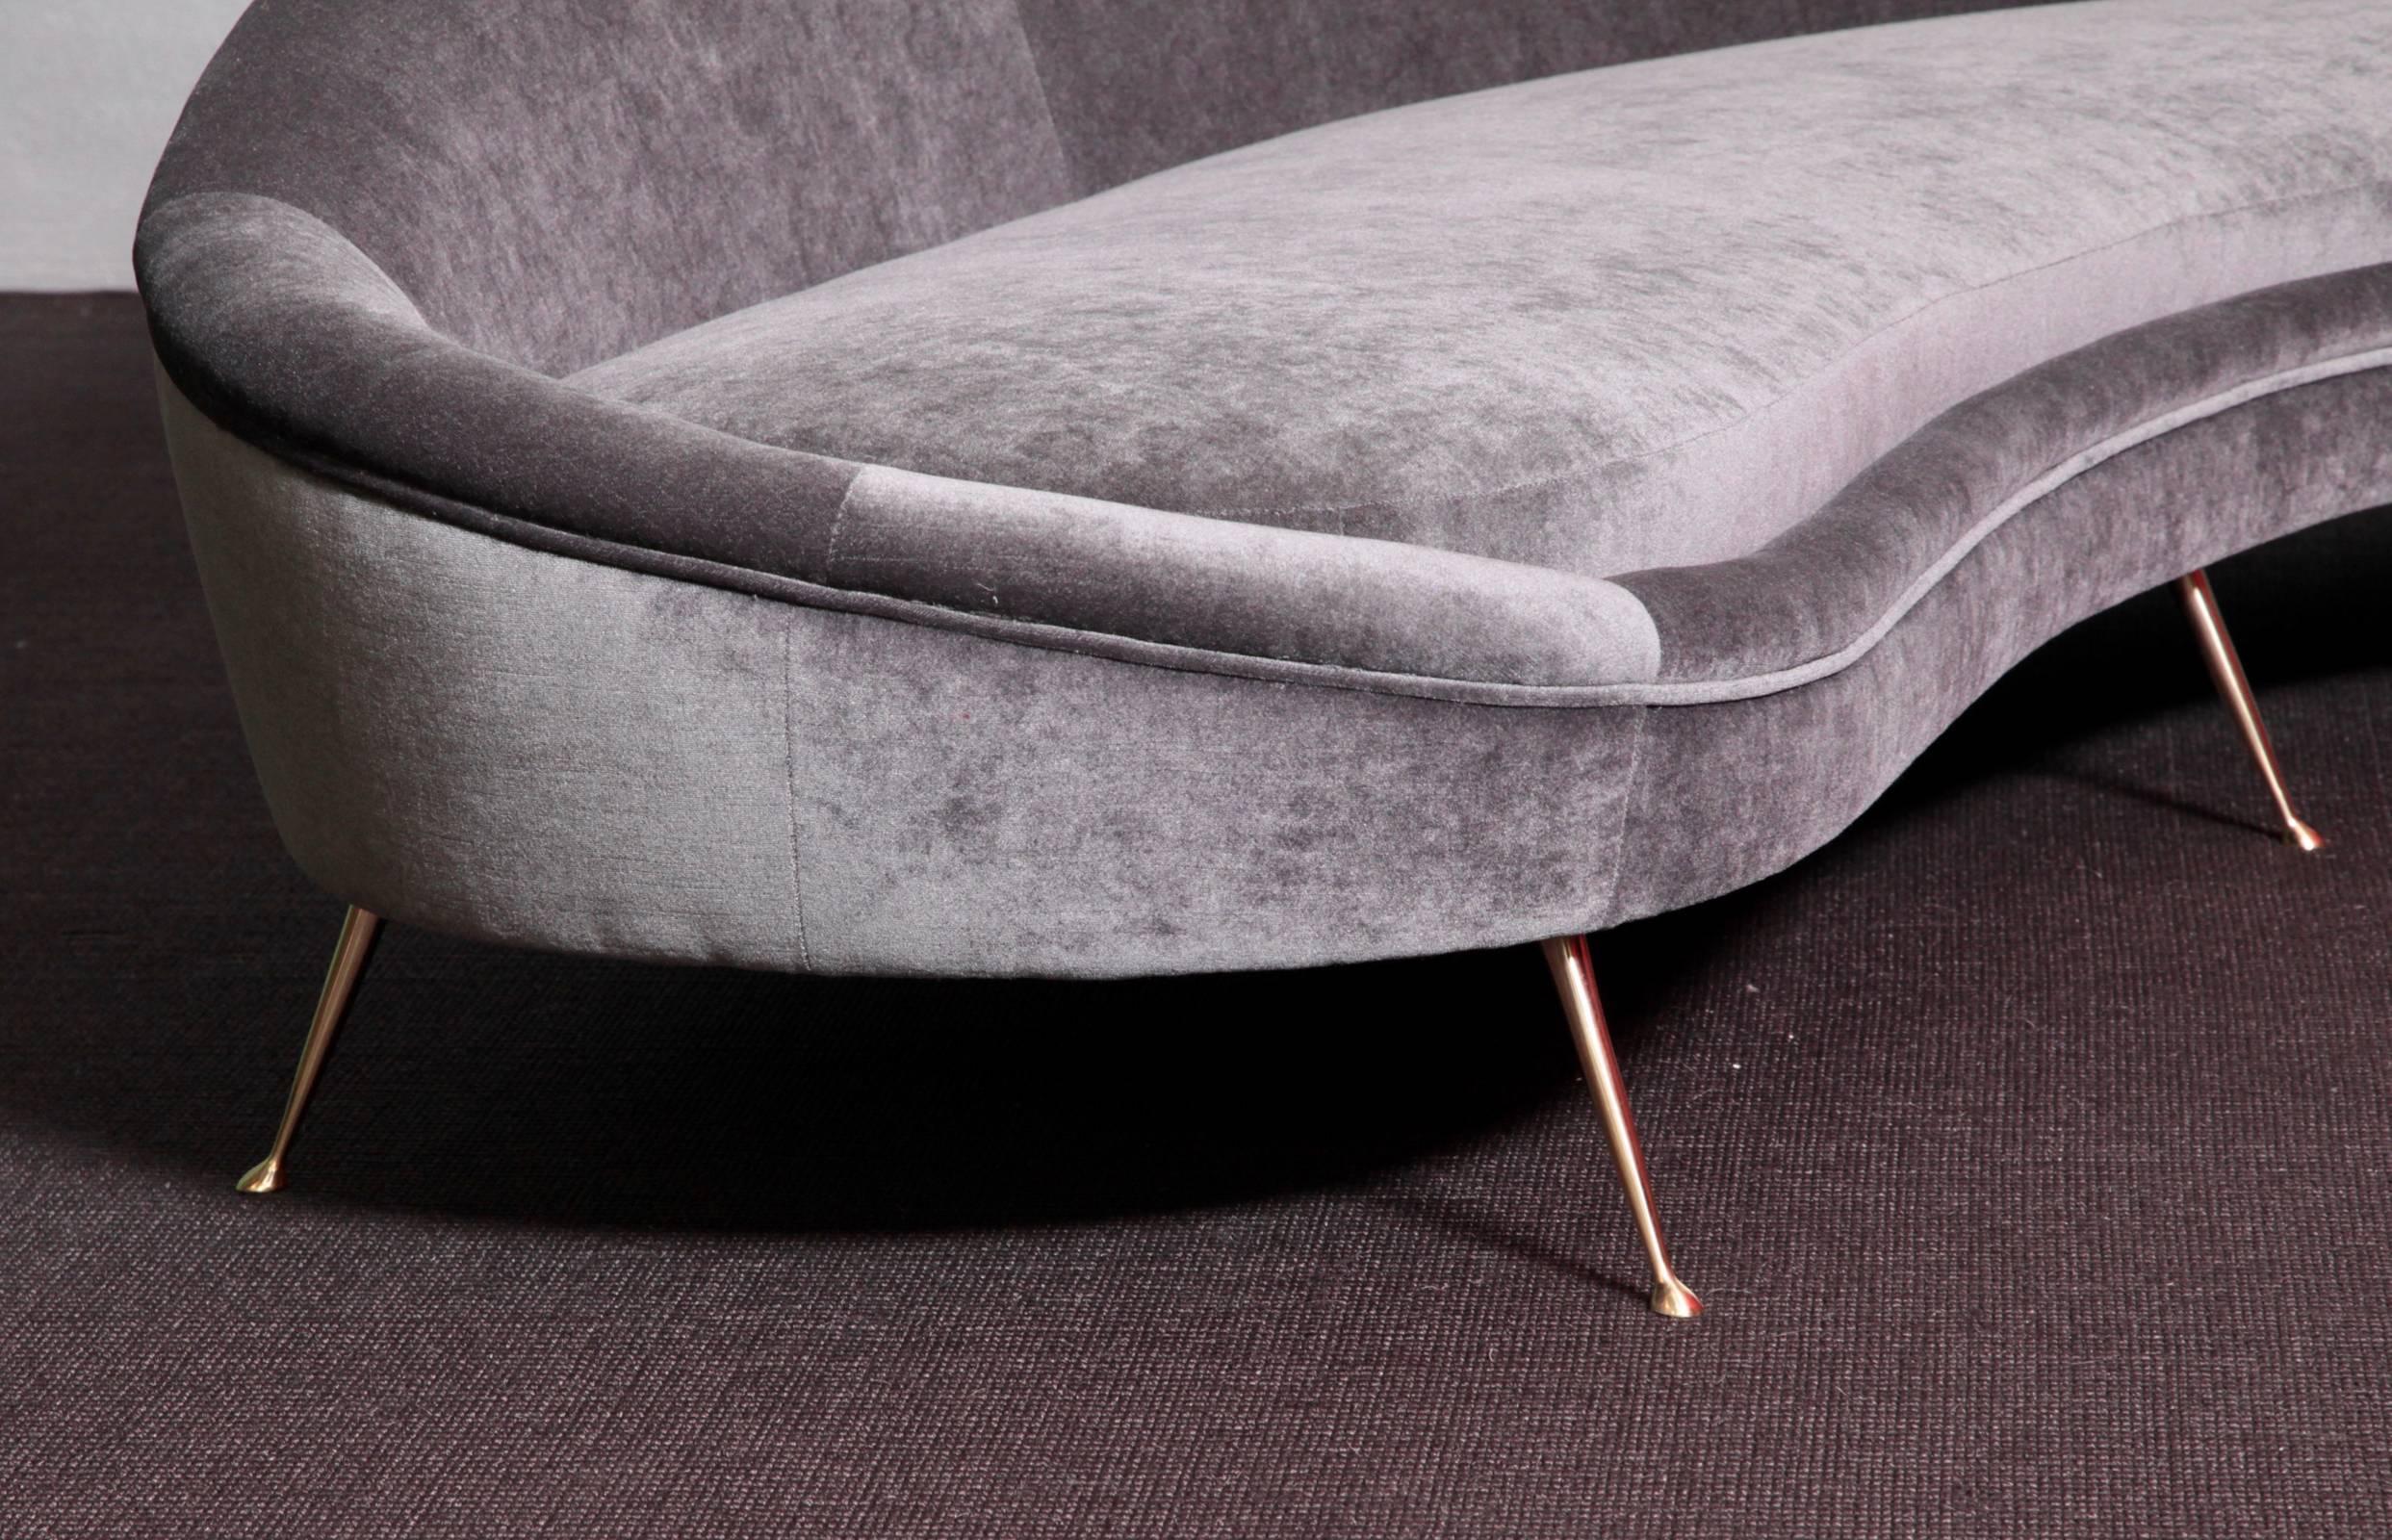 ico parisi curved sofa